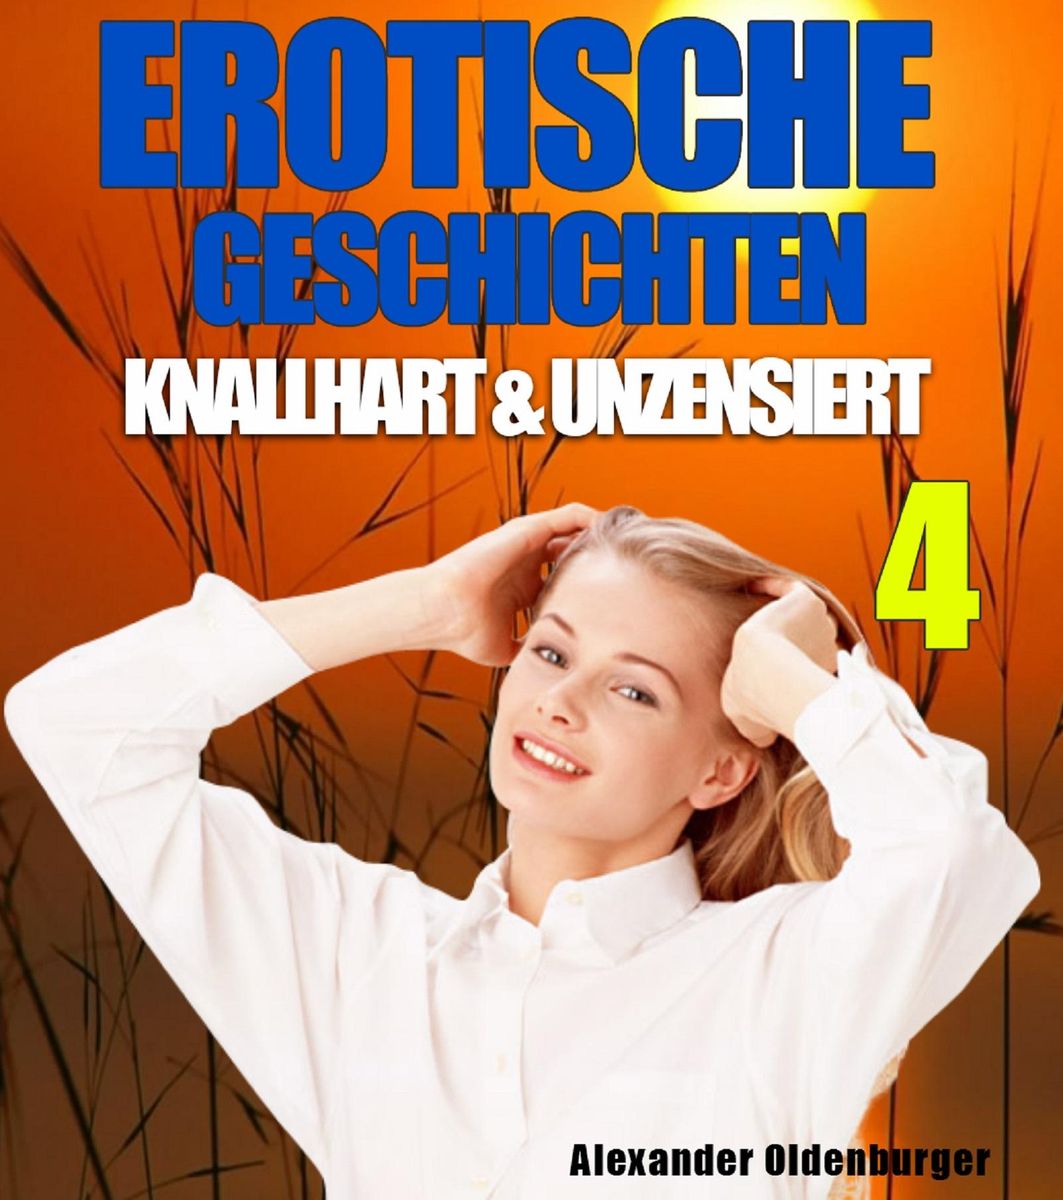 Erotische Geschichten Knallhart Und Unzensiert 4 Von Alexander Oldenburger Ebooks Orell Füssli 